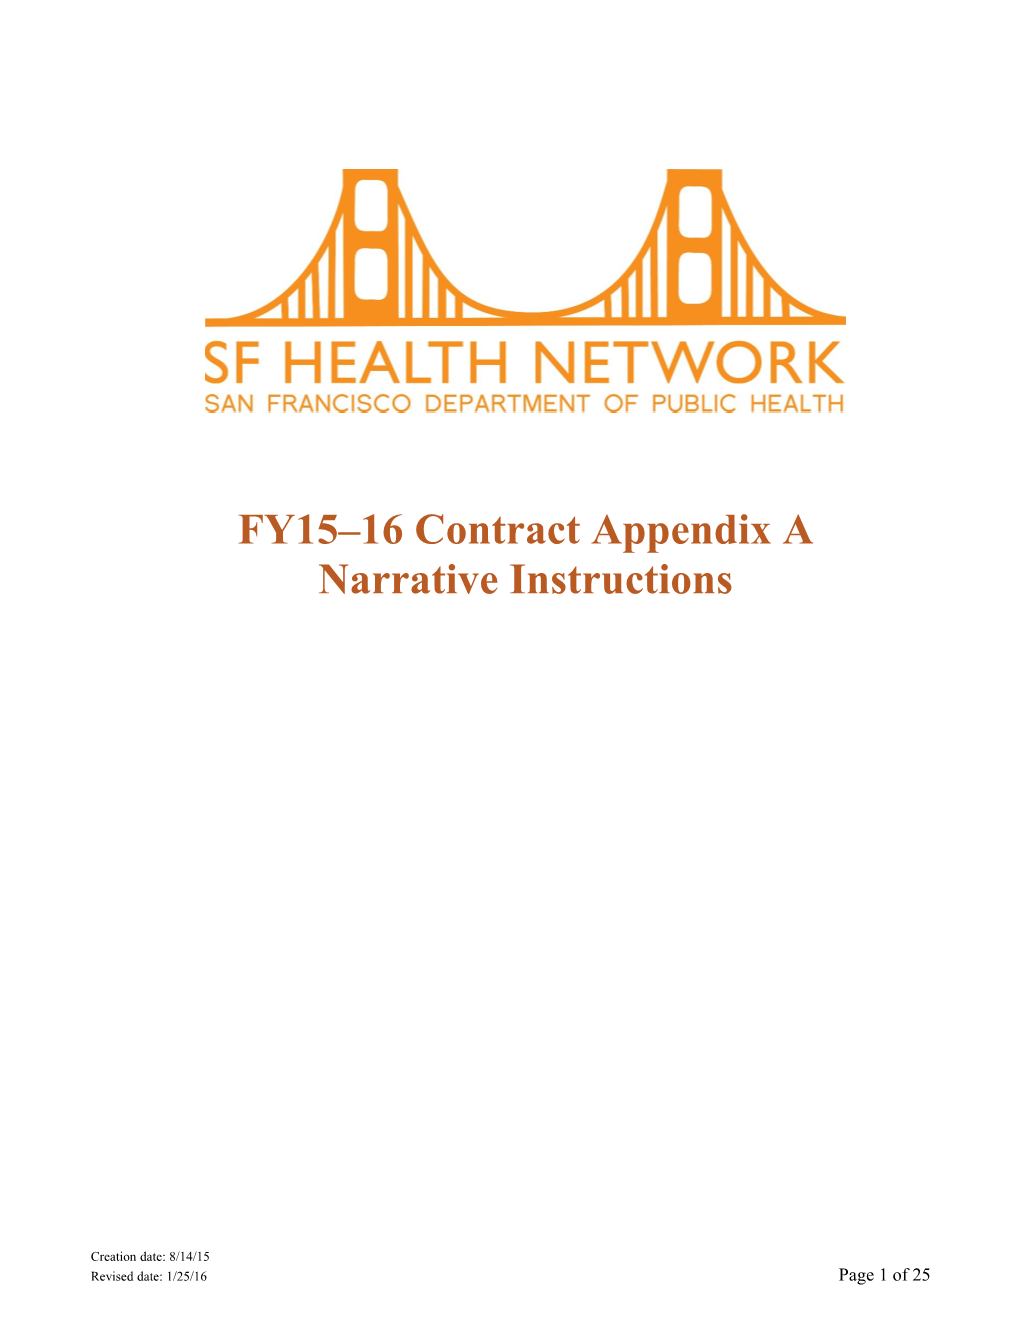 FY15 16 Contract Appendix a Narrative Instructions